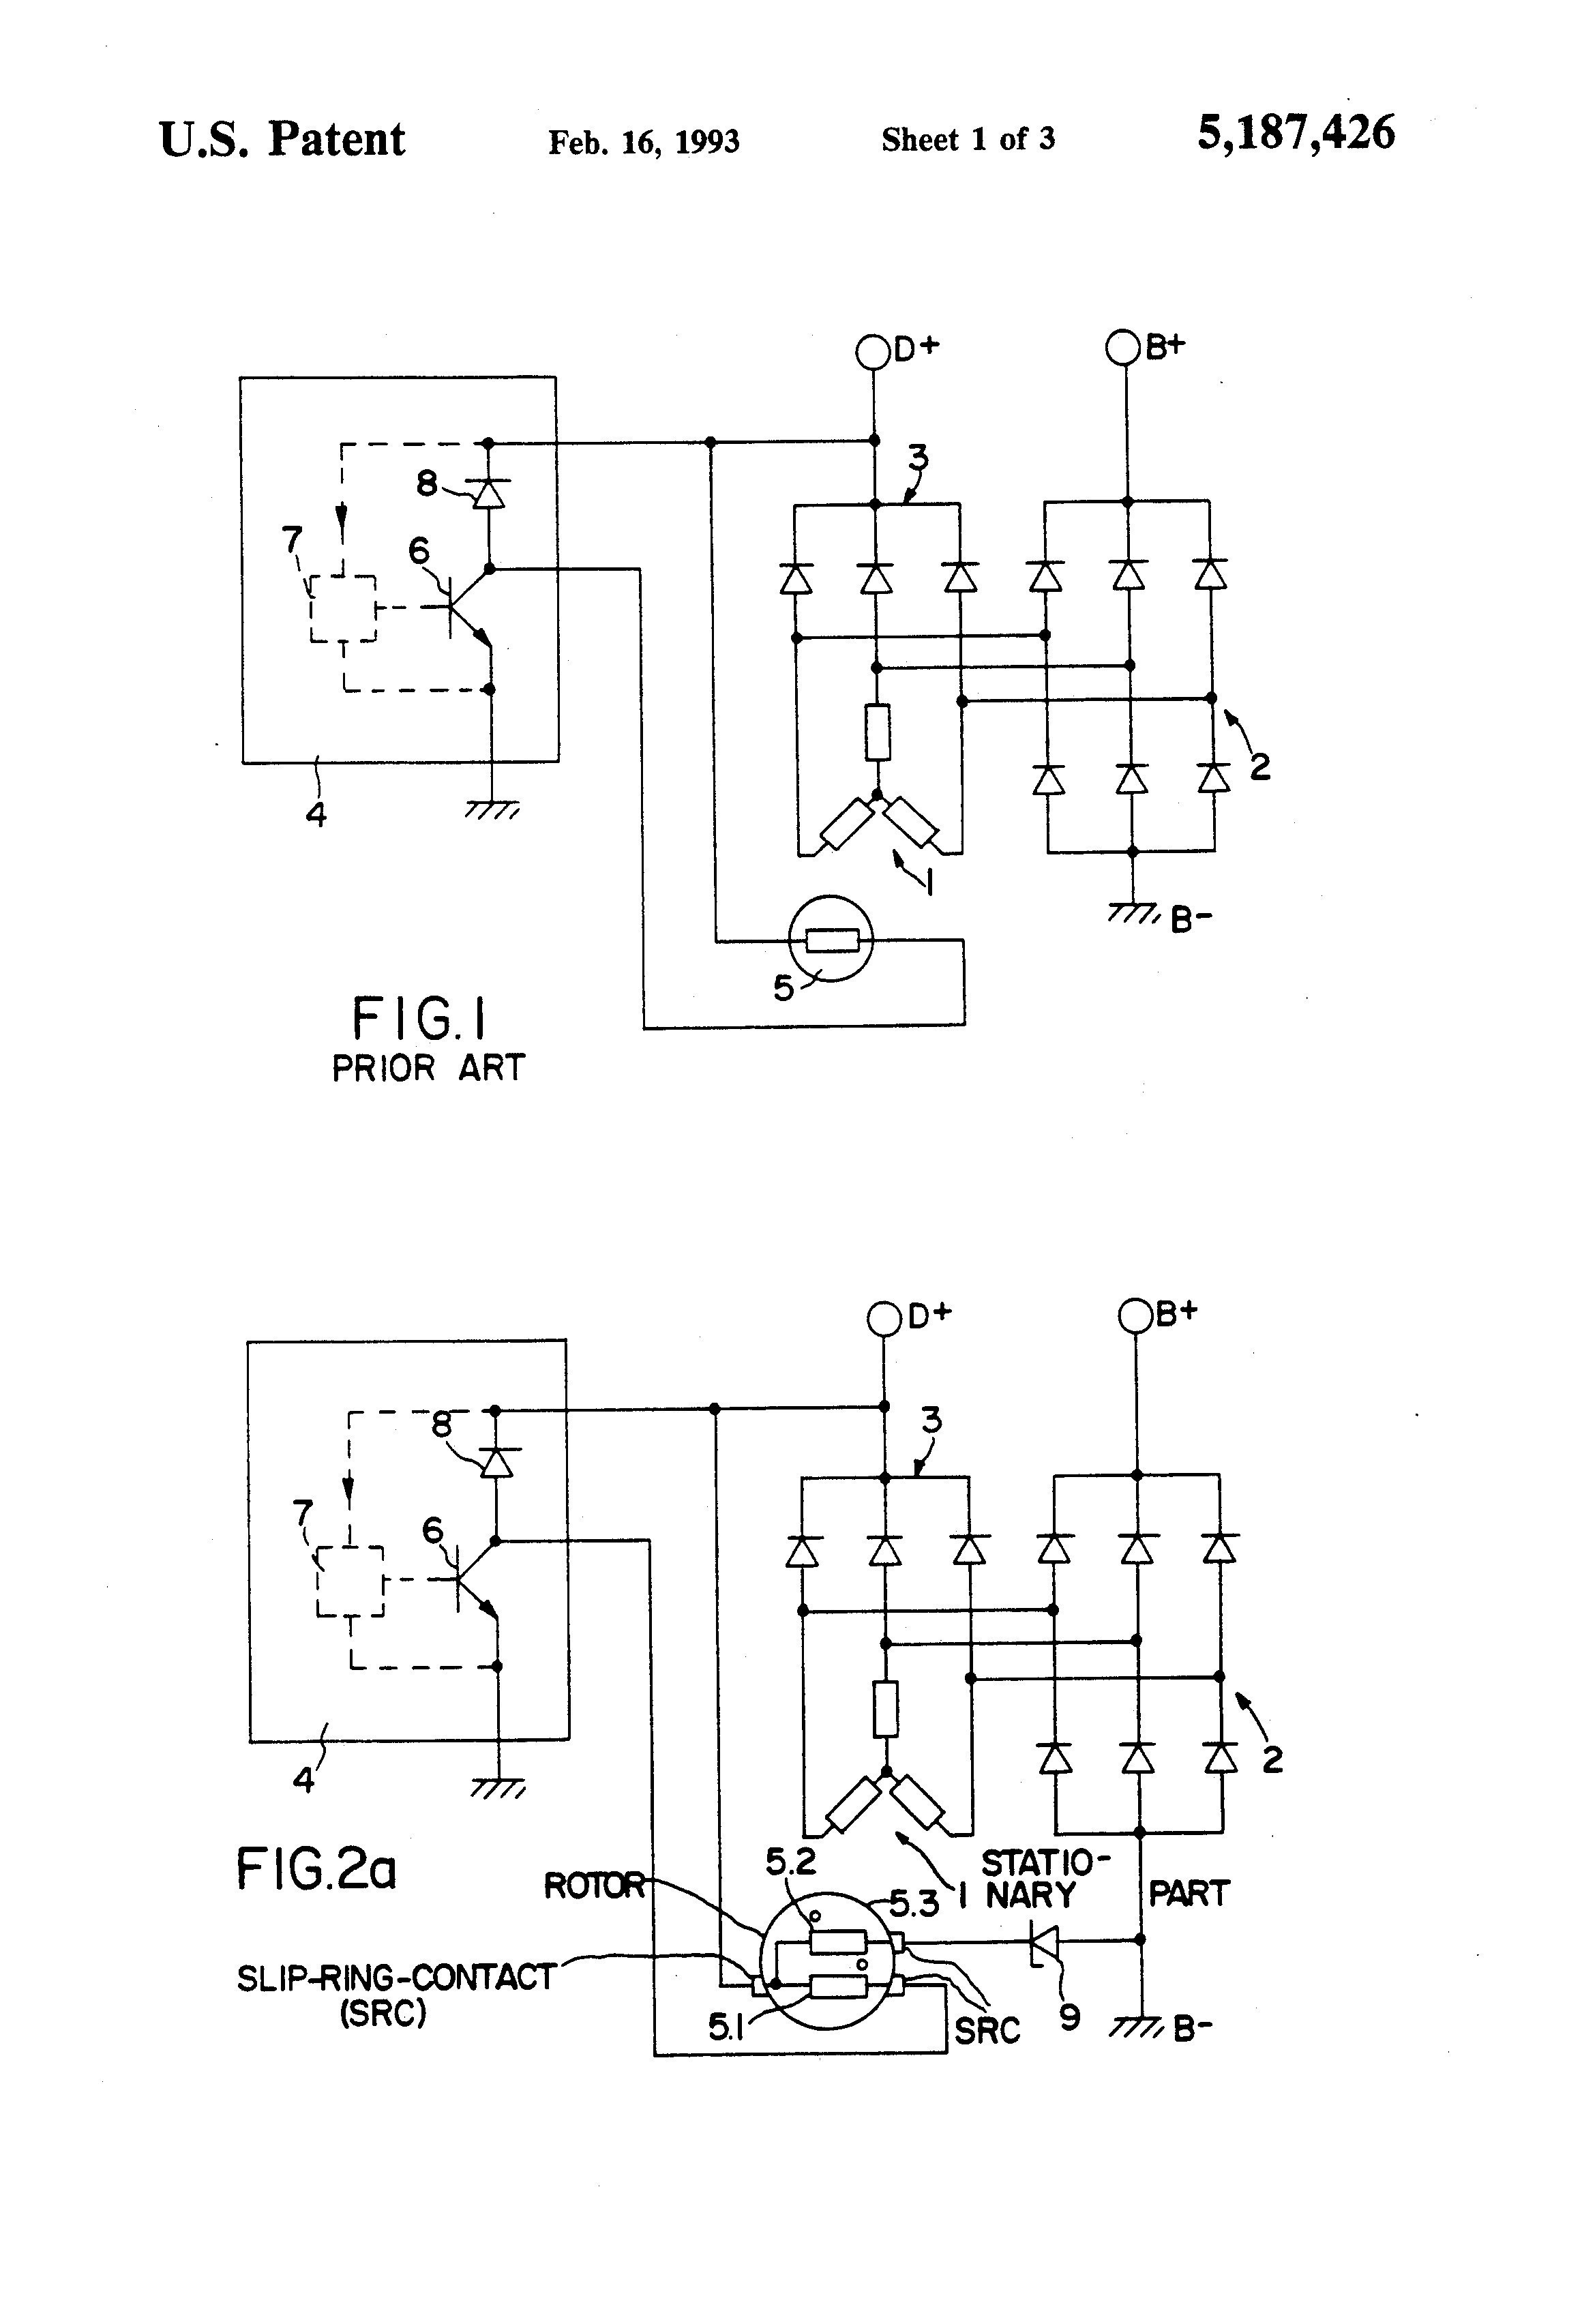 Car Alternator Circuit Diagram Deutz Alternator Wiring Diagram Of Car Alternator Circuit Diagram